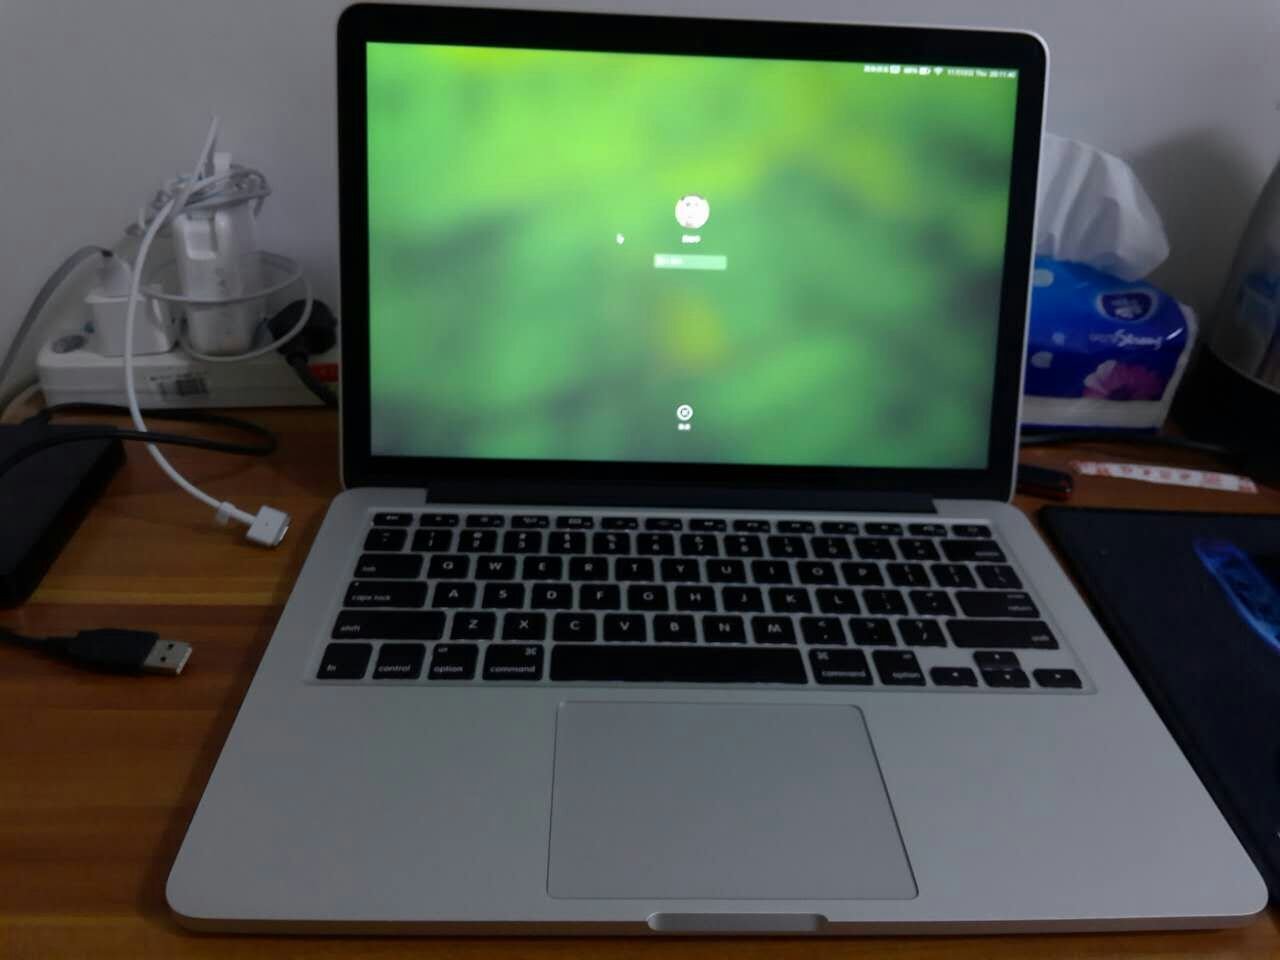 苹果笔记本macbook pro 13寸(mf840)